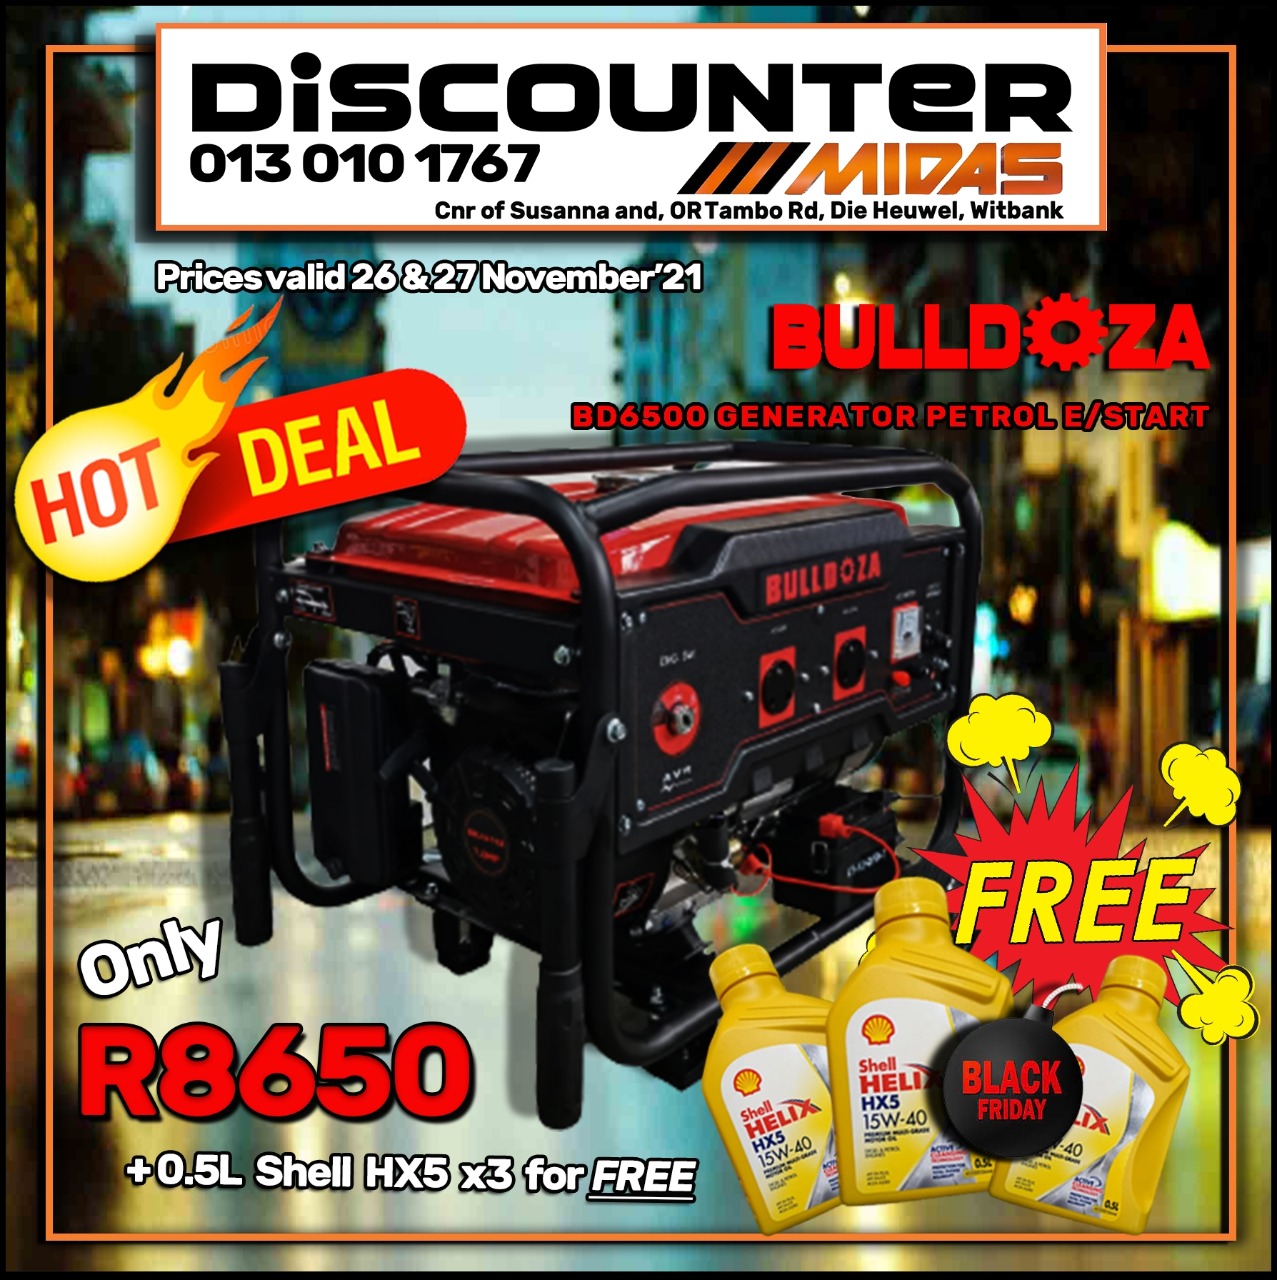 Get the BullDoza BD6500 Generator Petrol E/Start